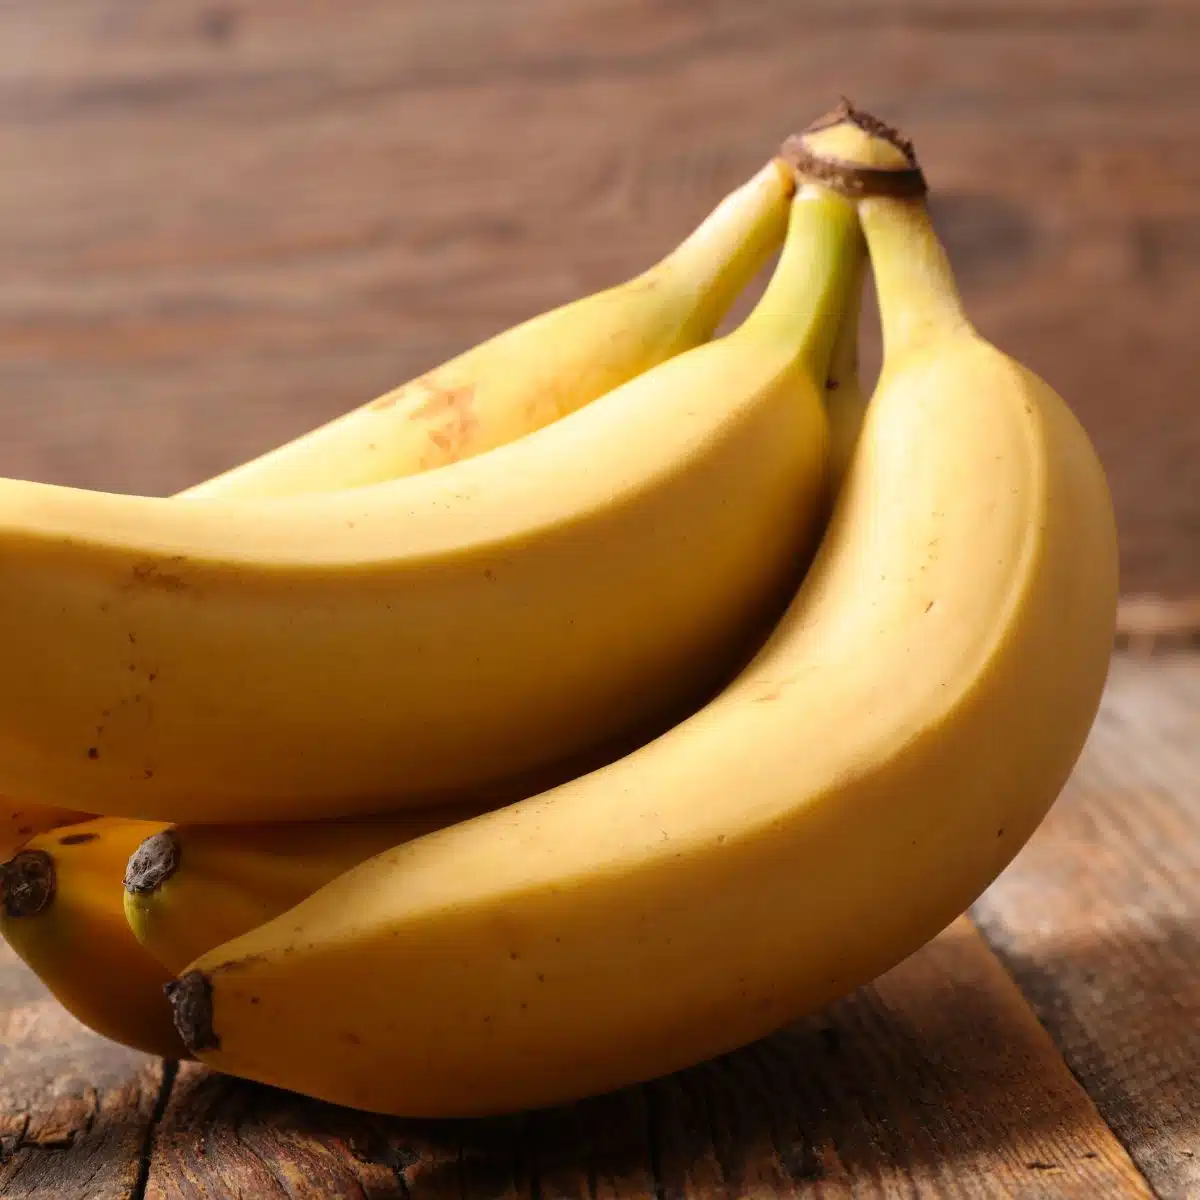 Najbolje ideje za zamjenu za bananu i alternative koje možete koristiti kada nemate svježu hrpu banana poput ovih.